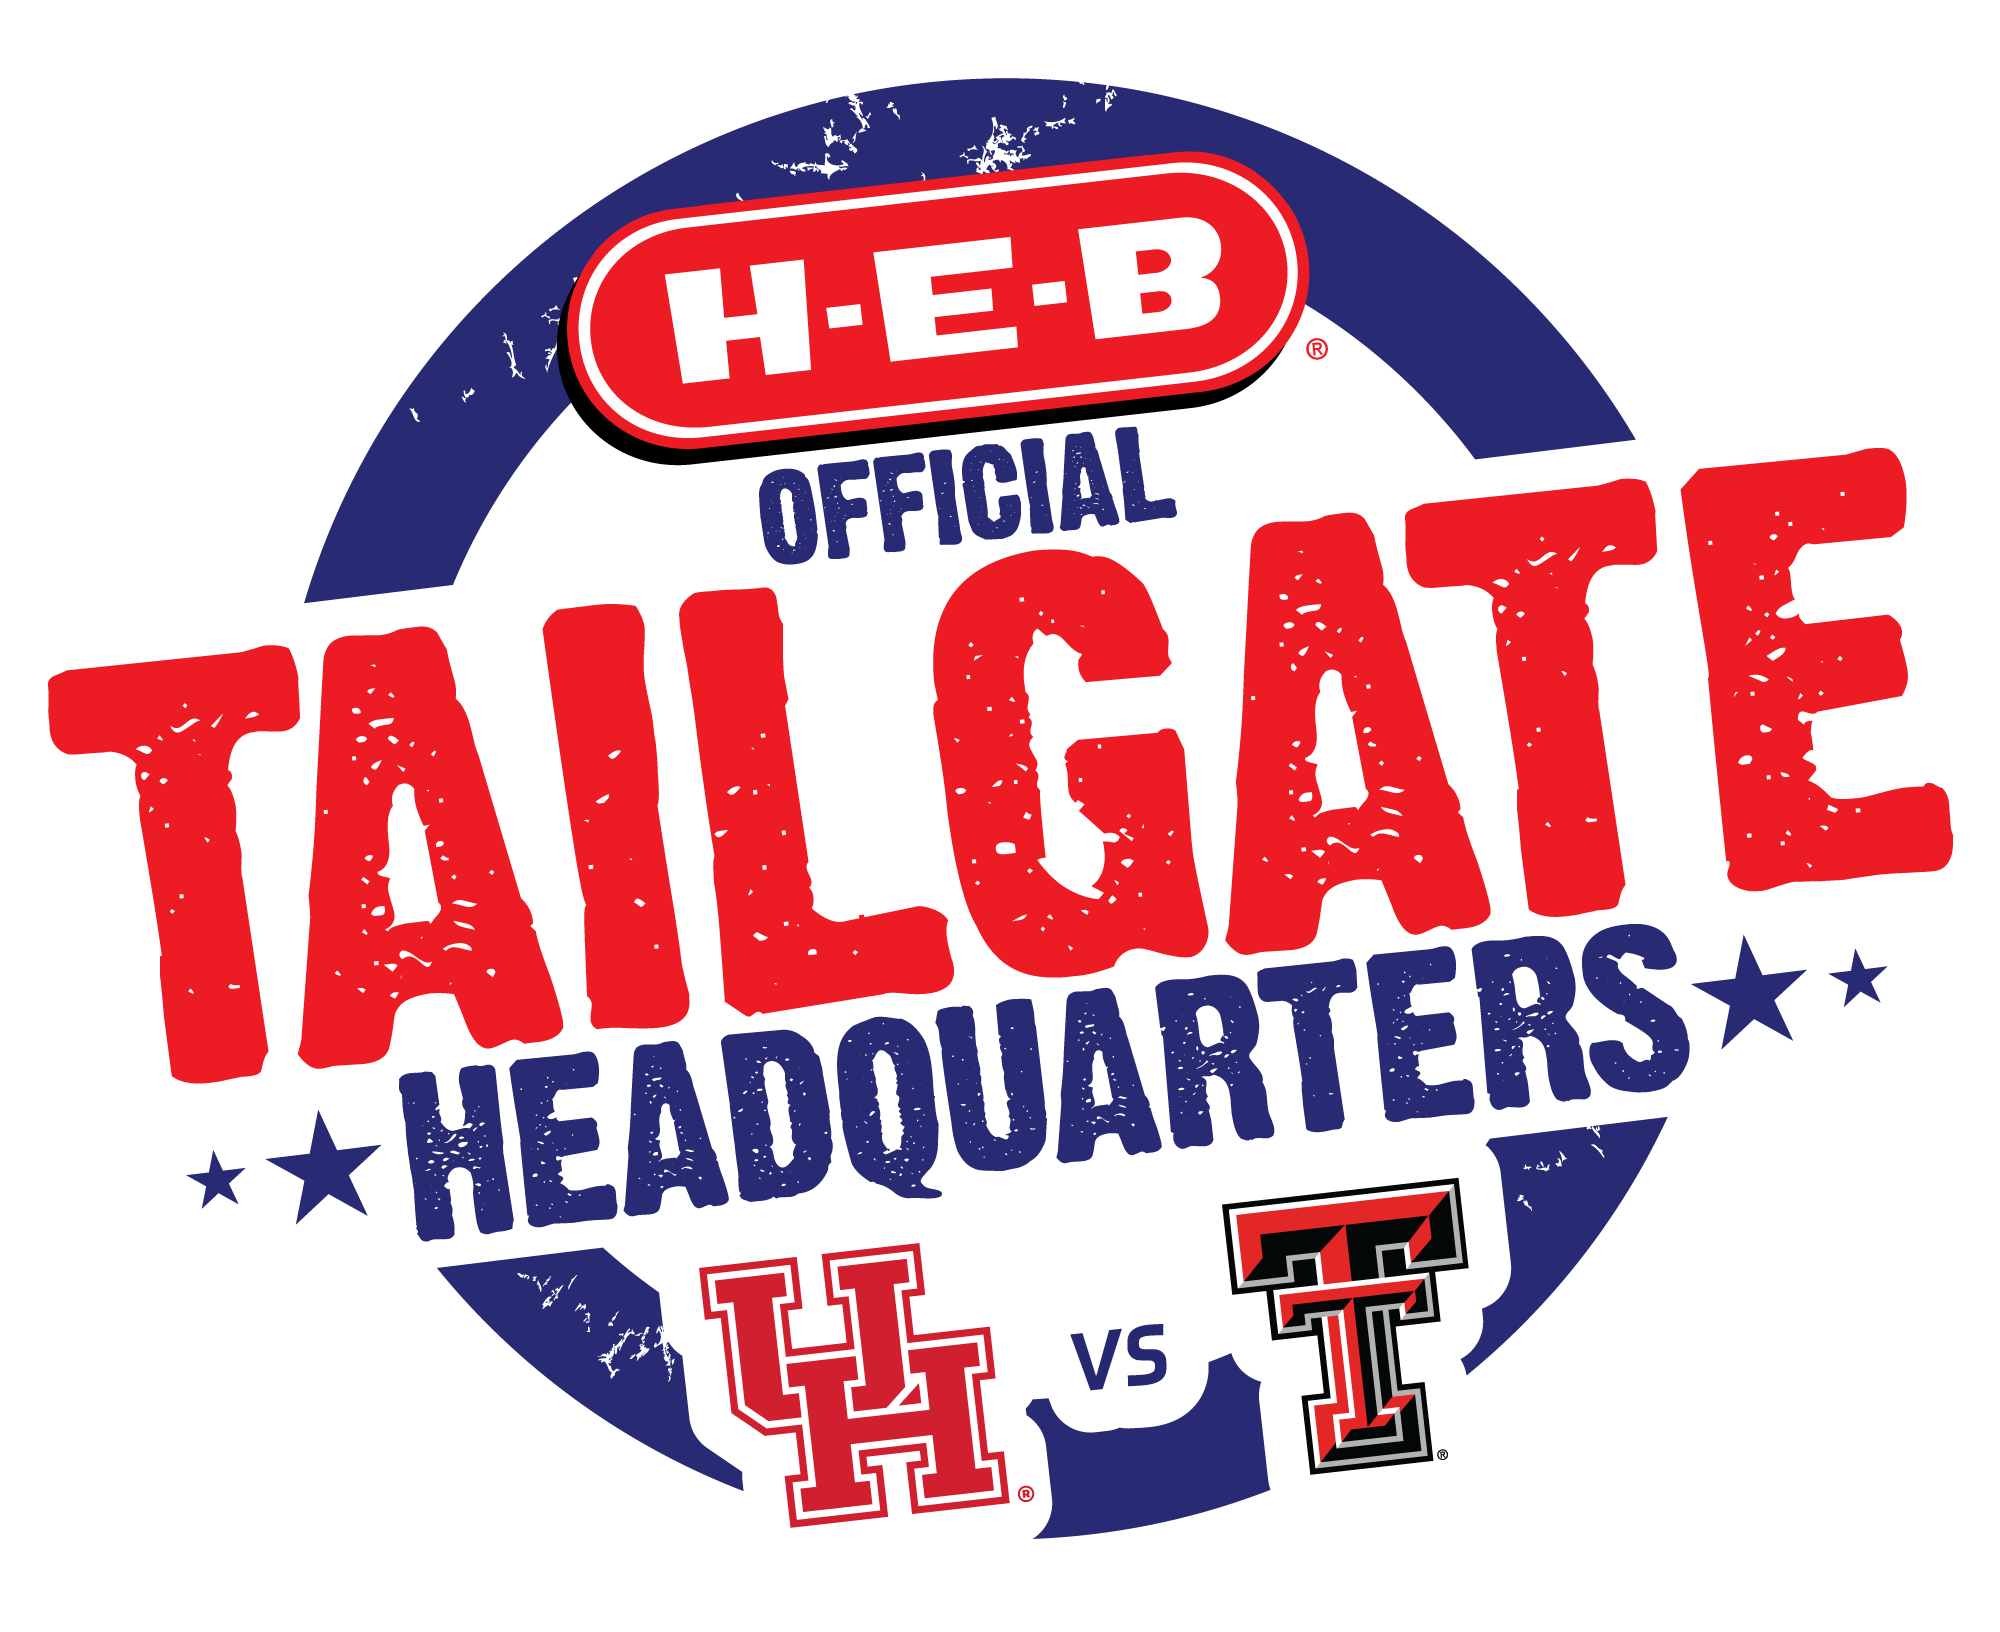 H-E-B Tailgate Headquaters